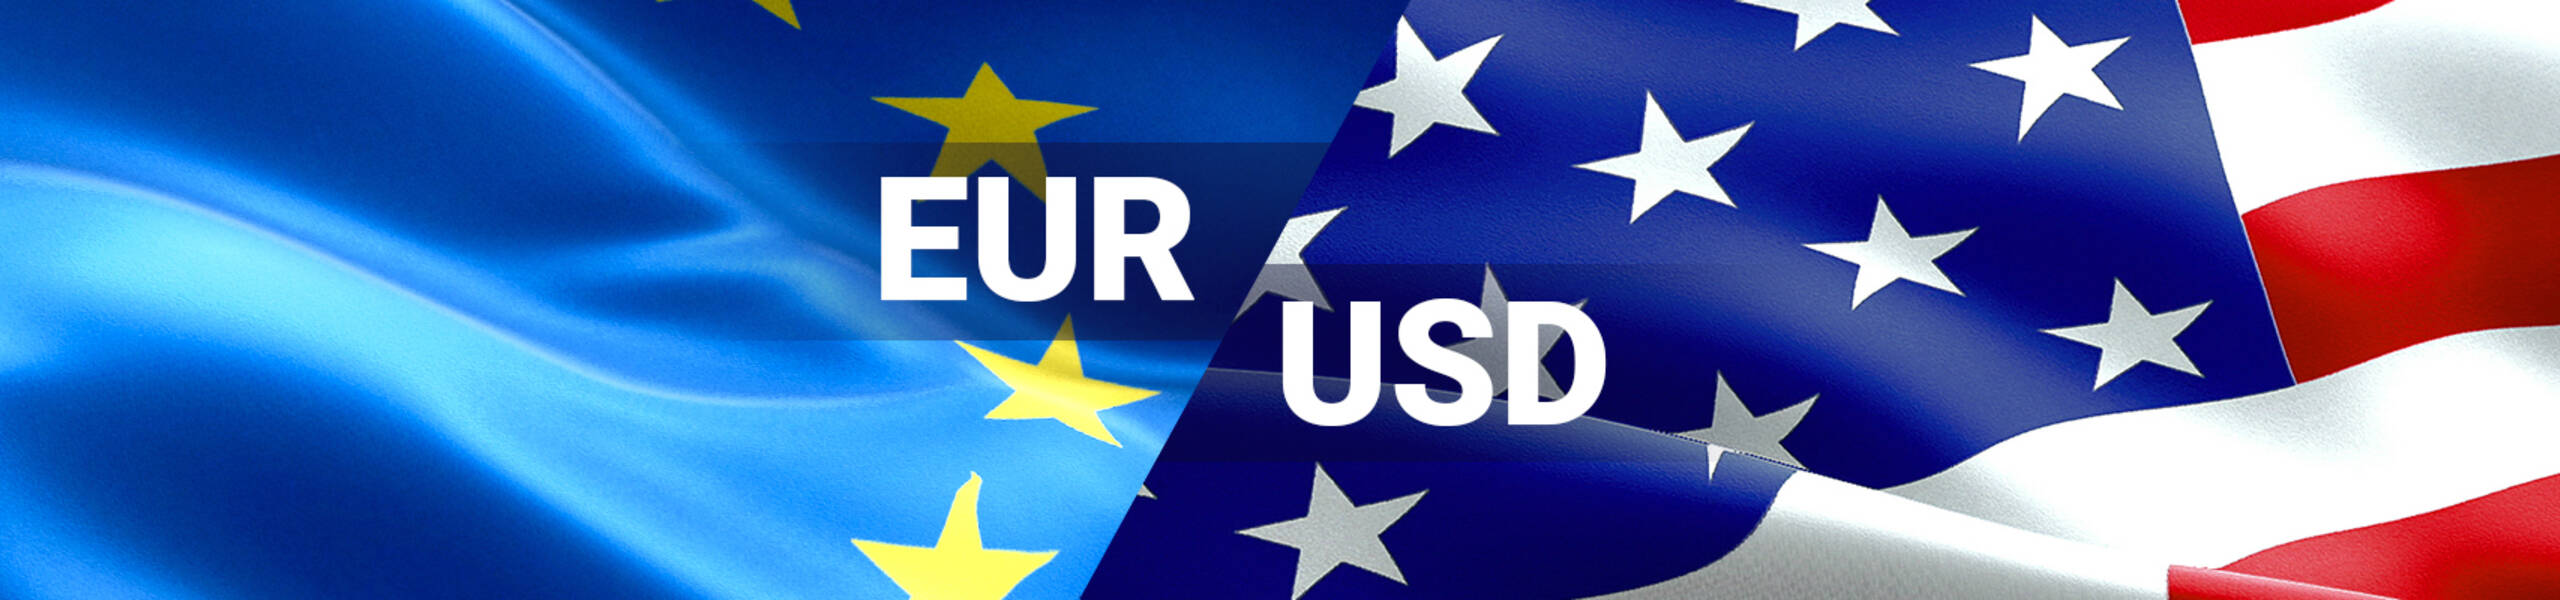 El Euro se fortalece luego de las declaraciones de merkel